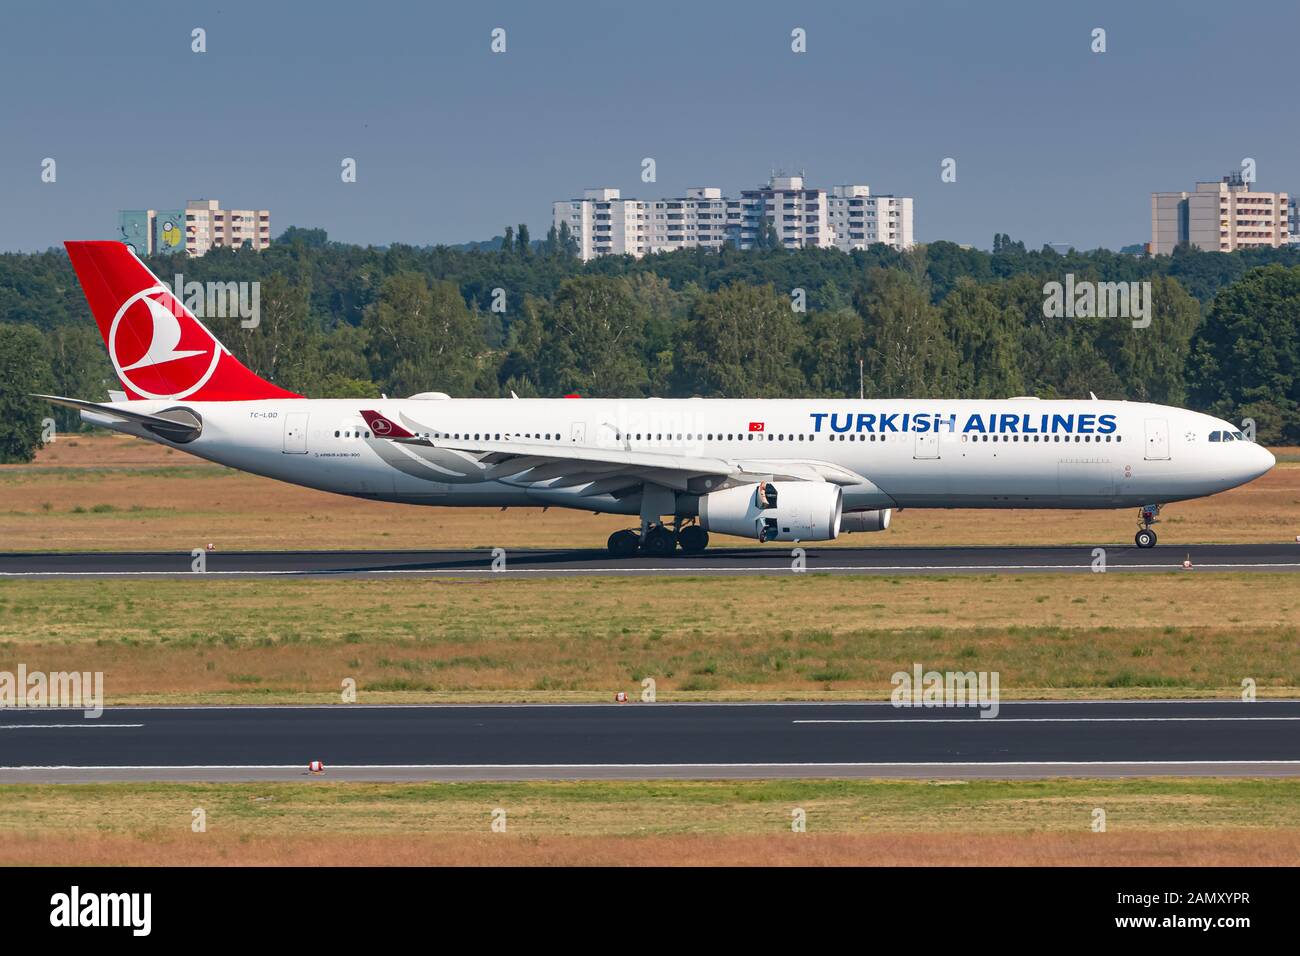 Berlin, Allemagne - 27 mai 2018 : avion Airbus   de Turkish Airlines à l'aéroport de Berlin Tegel (TXL) en Allemagne. Airbus est un constructeur d'avions fro Banque D'Images